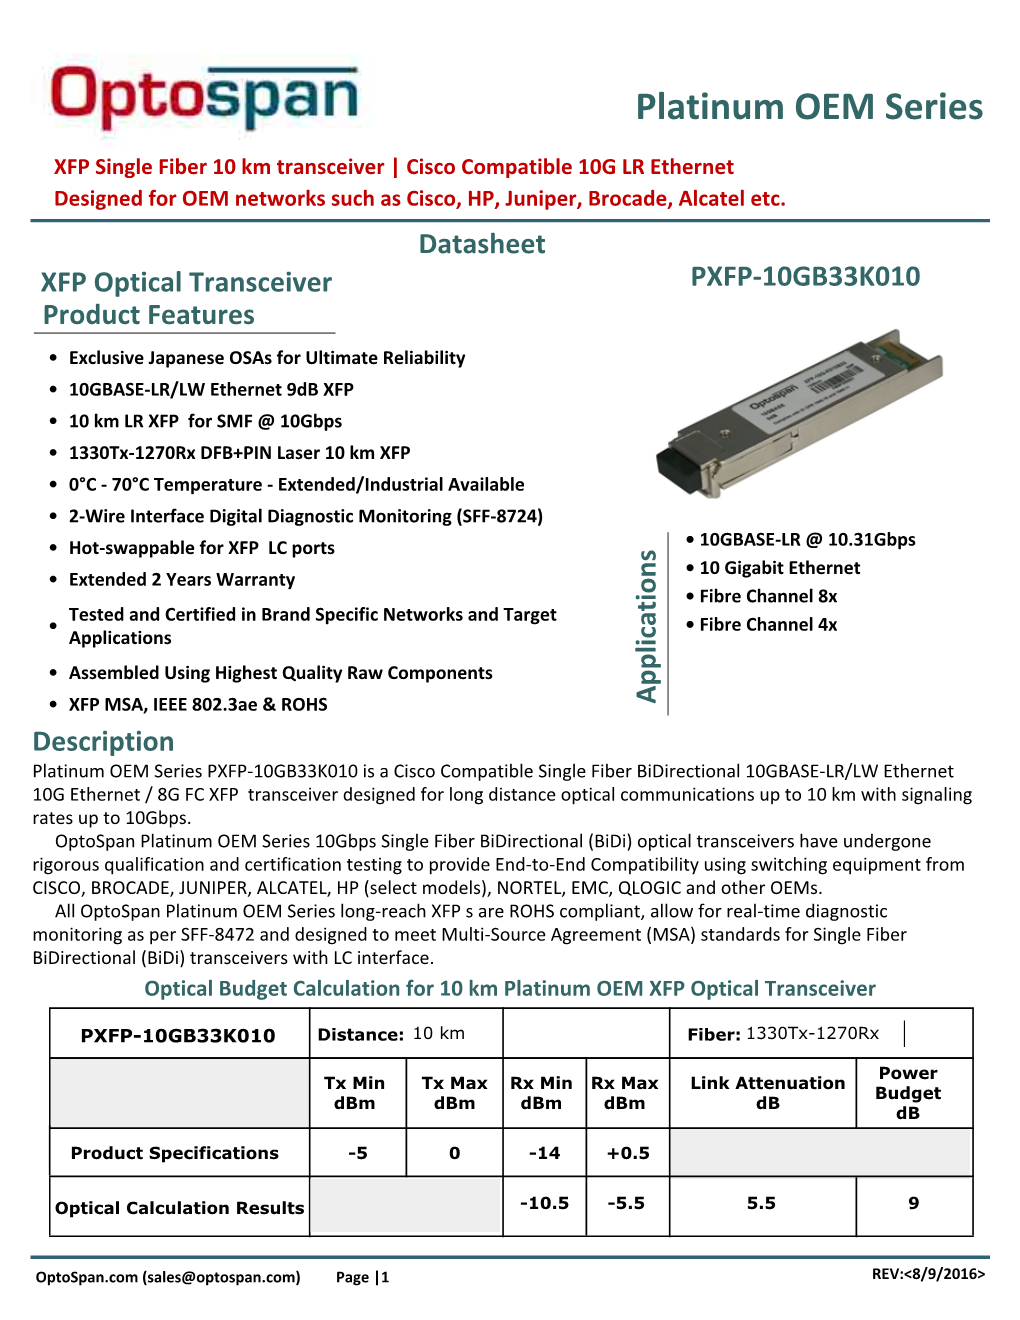 XFP Single Fiber 10 Km Transceiver | 10G LR Ethernet